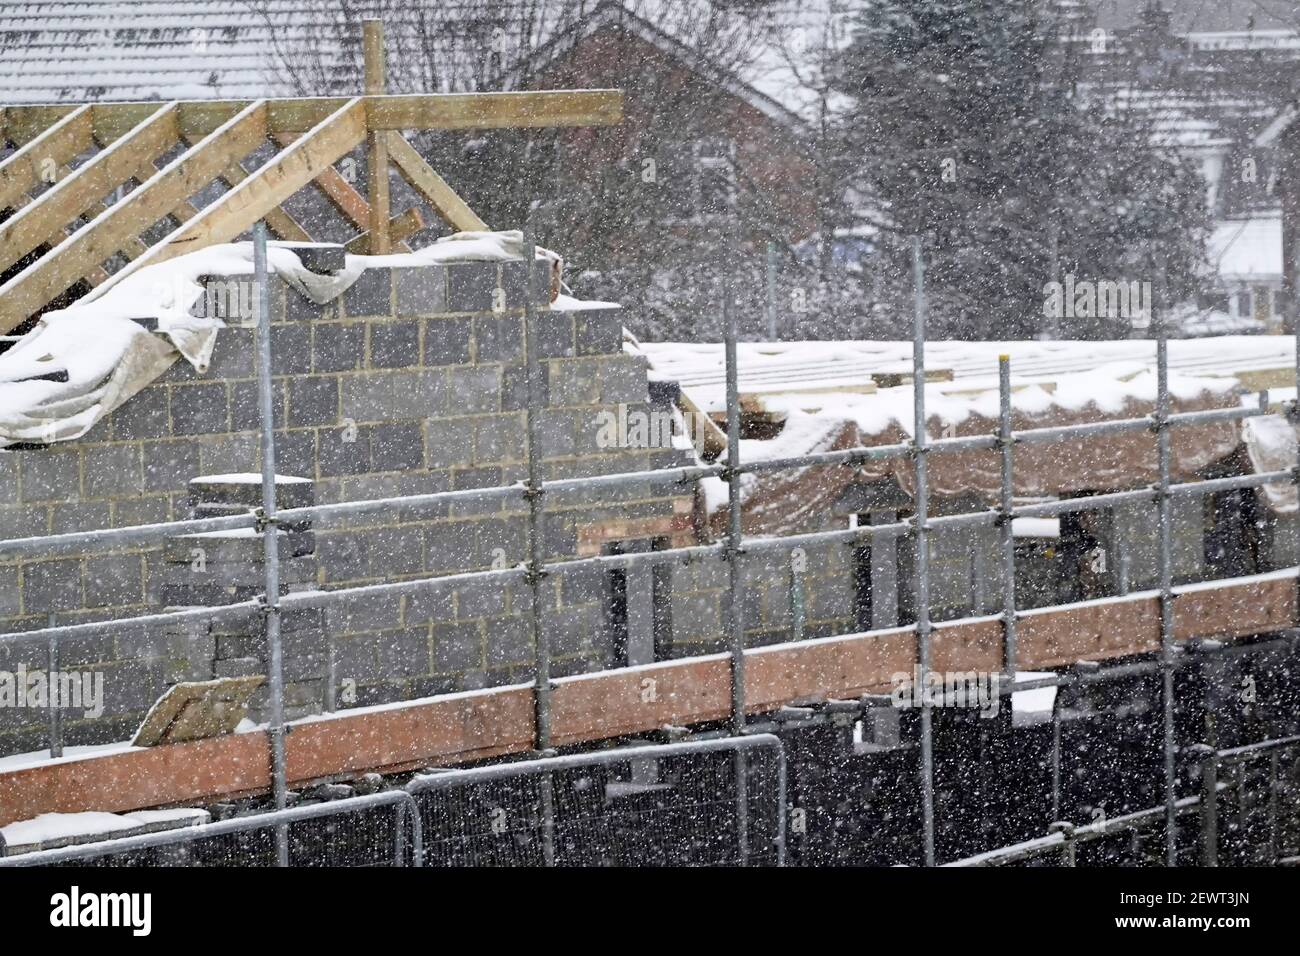 Les travaux sur le chantier de construction de bâtiments arrêtent la glace sur le lieu de travail de l'échafaudage non sécuritaire en cas de conditions climatiques glaciales hivernales chutes de neige causant des perturbations Angleterre Royaume-Uni Banque D'Images